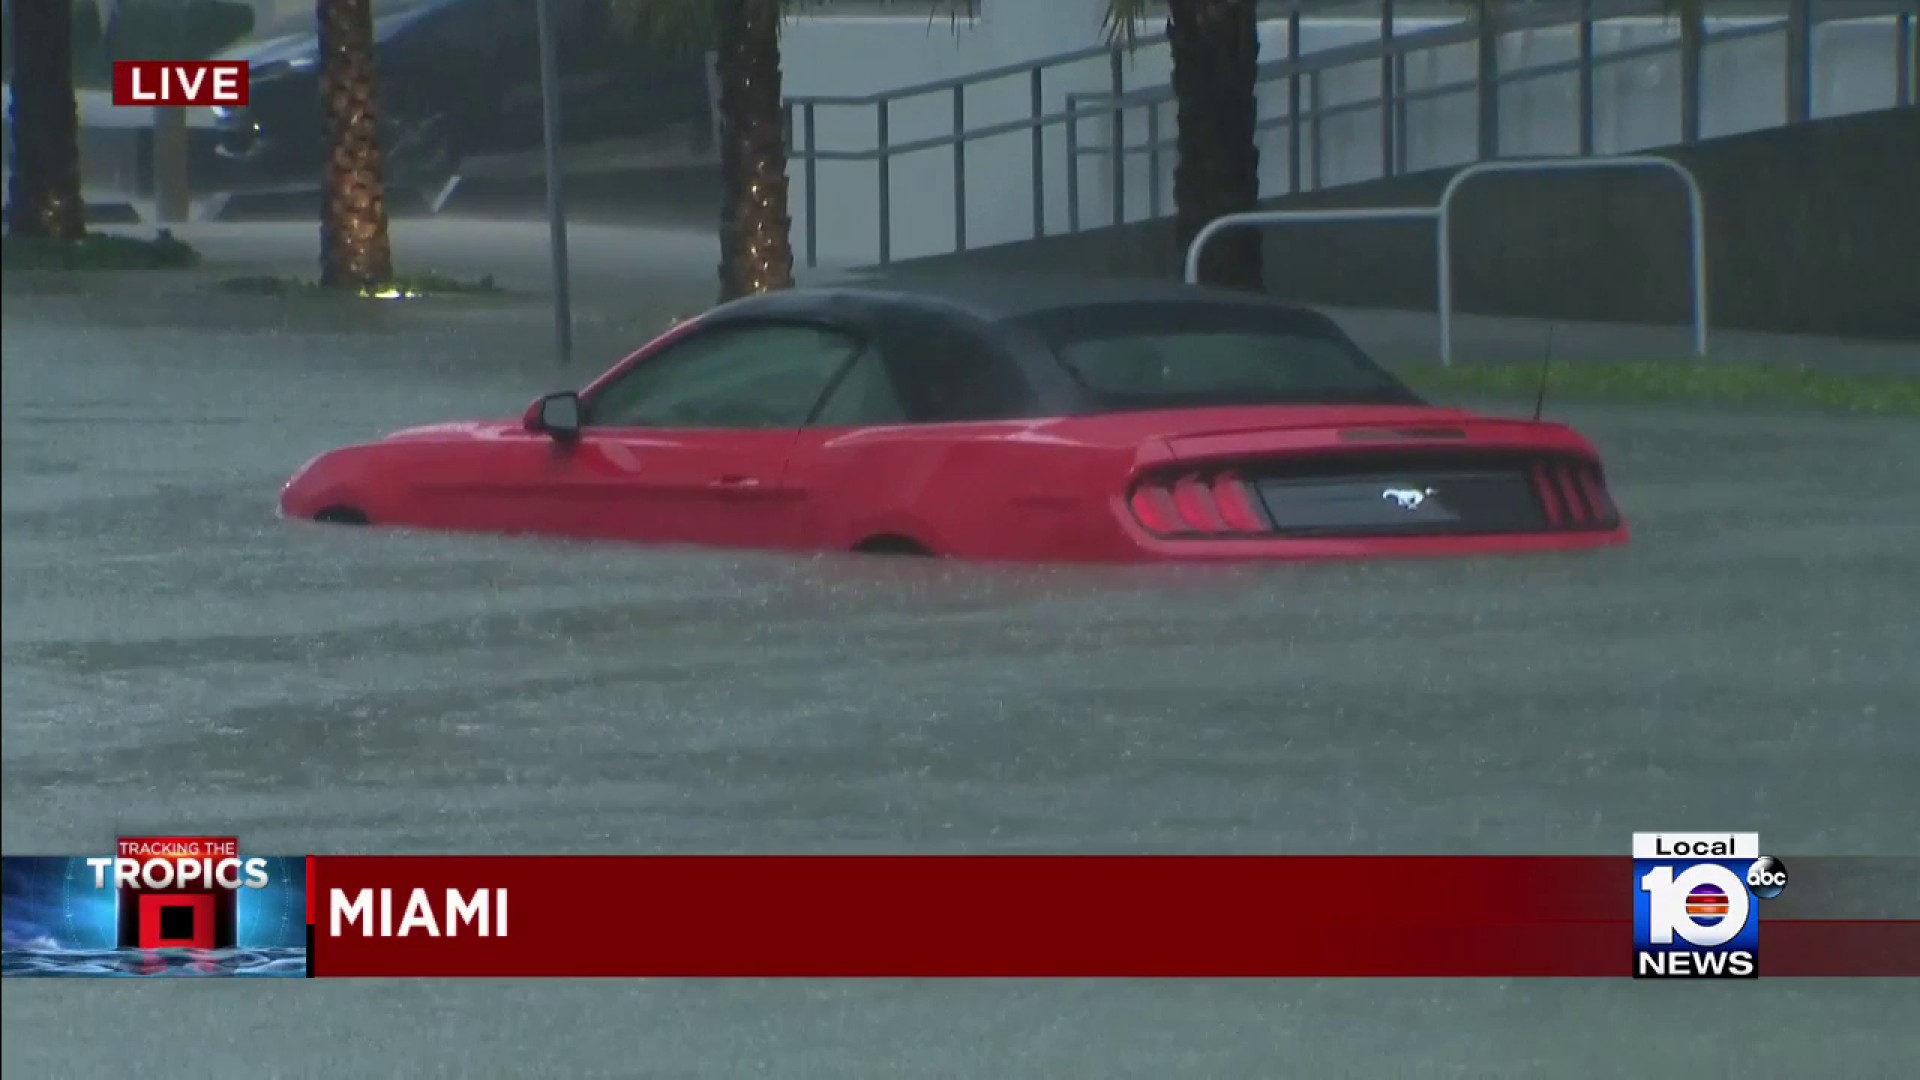 Problemas de inundaciones afectan varias áreas del sur de Florida